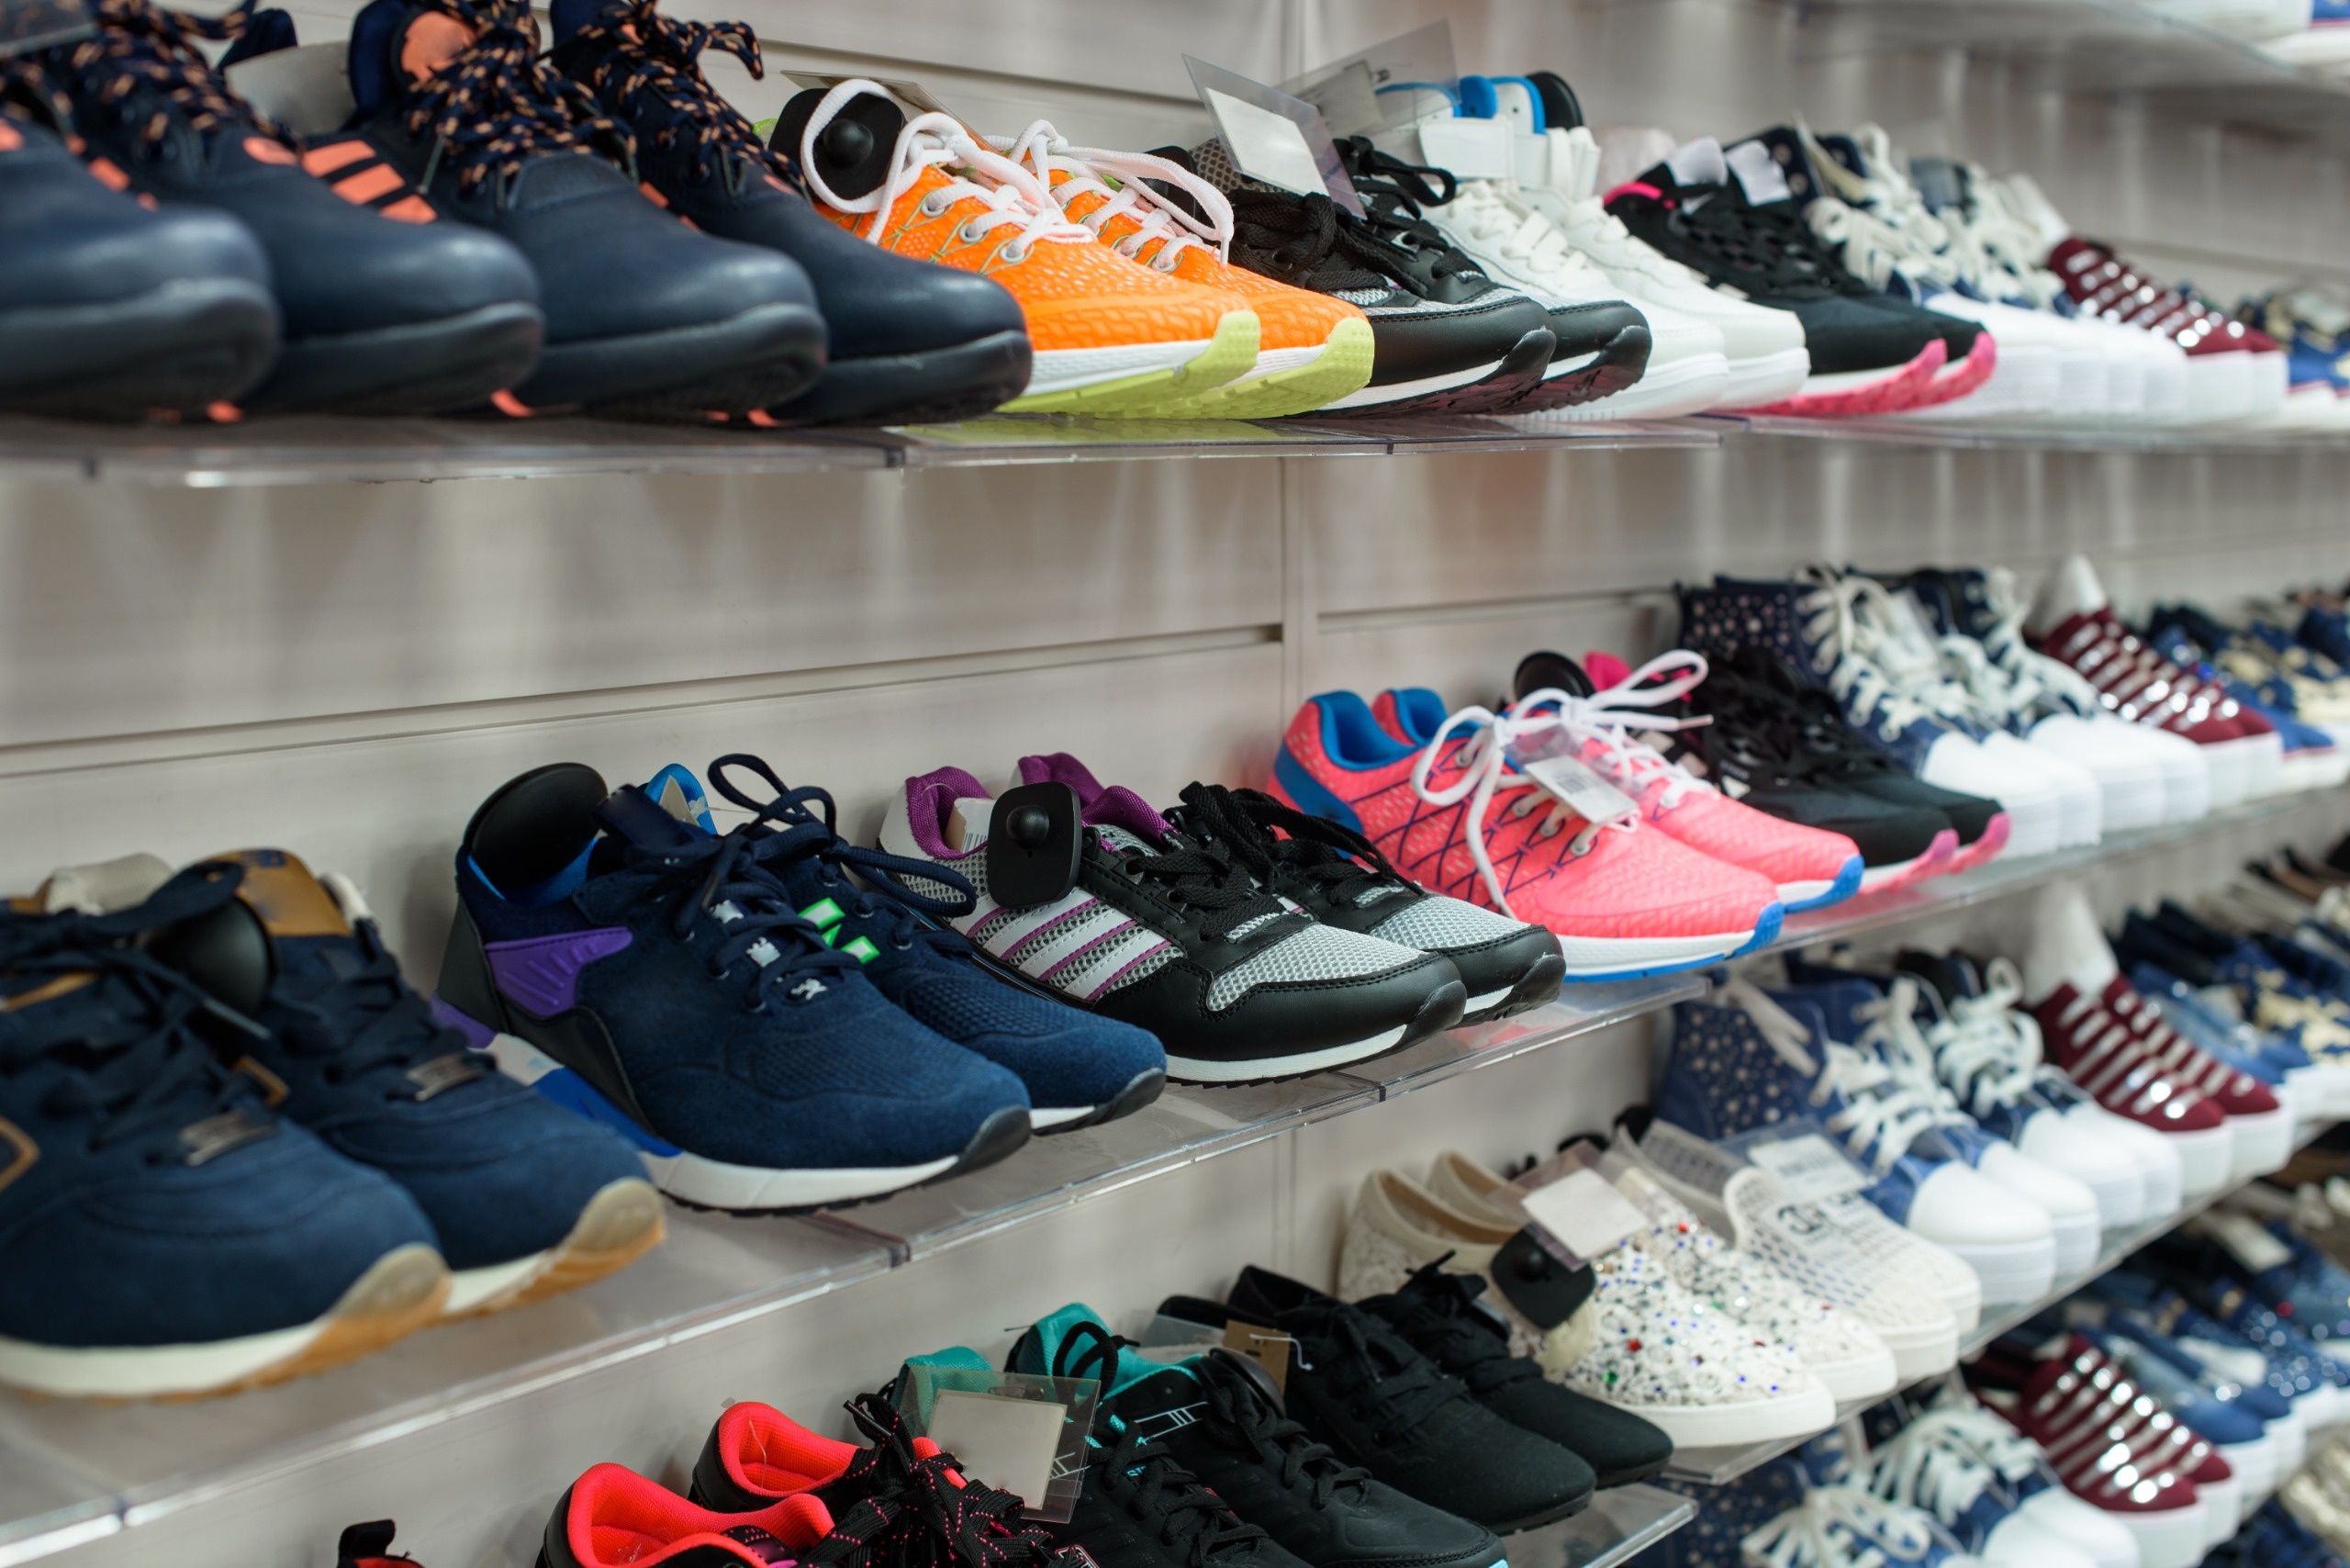 Zapatillas en una tienda / Shutterstock